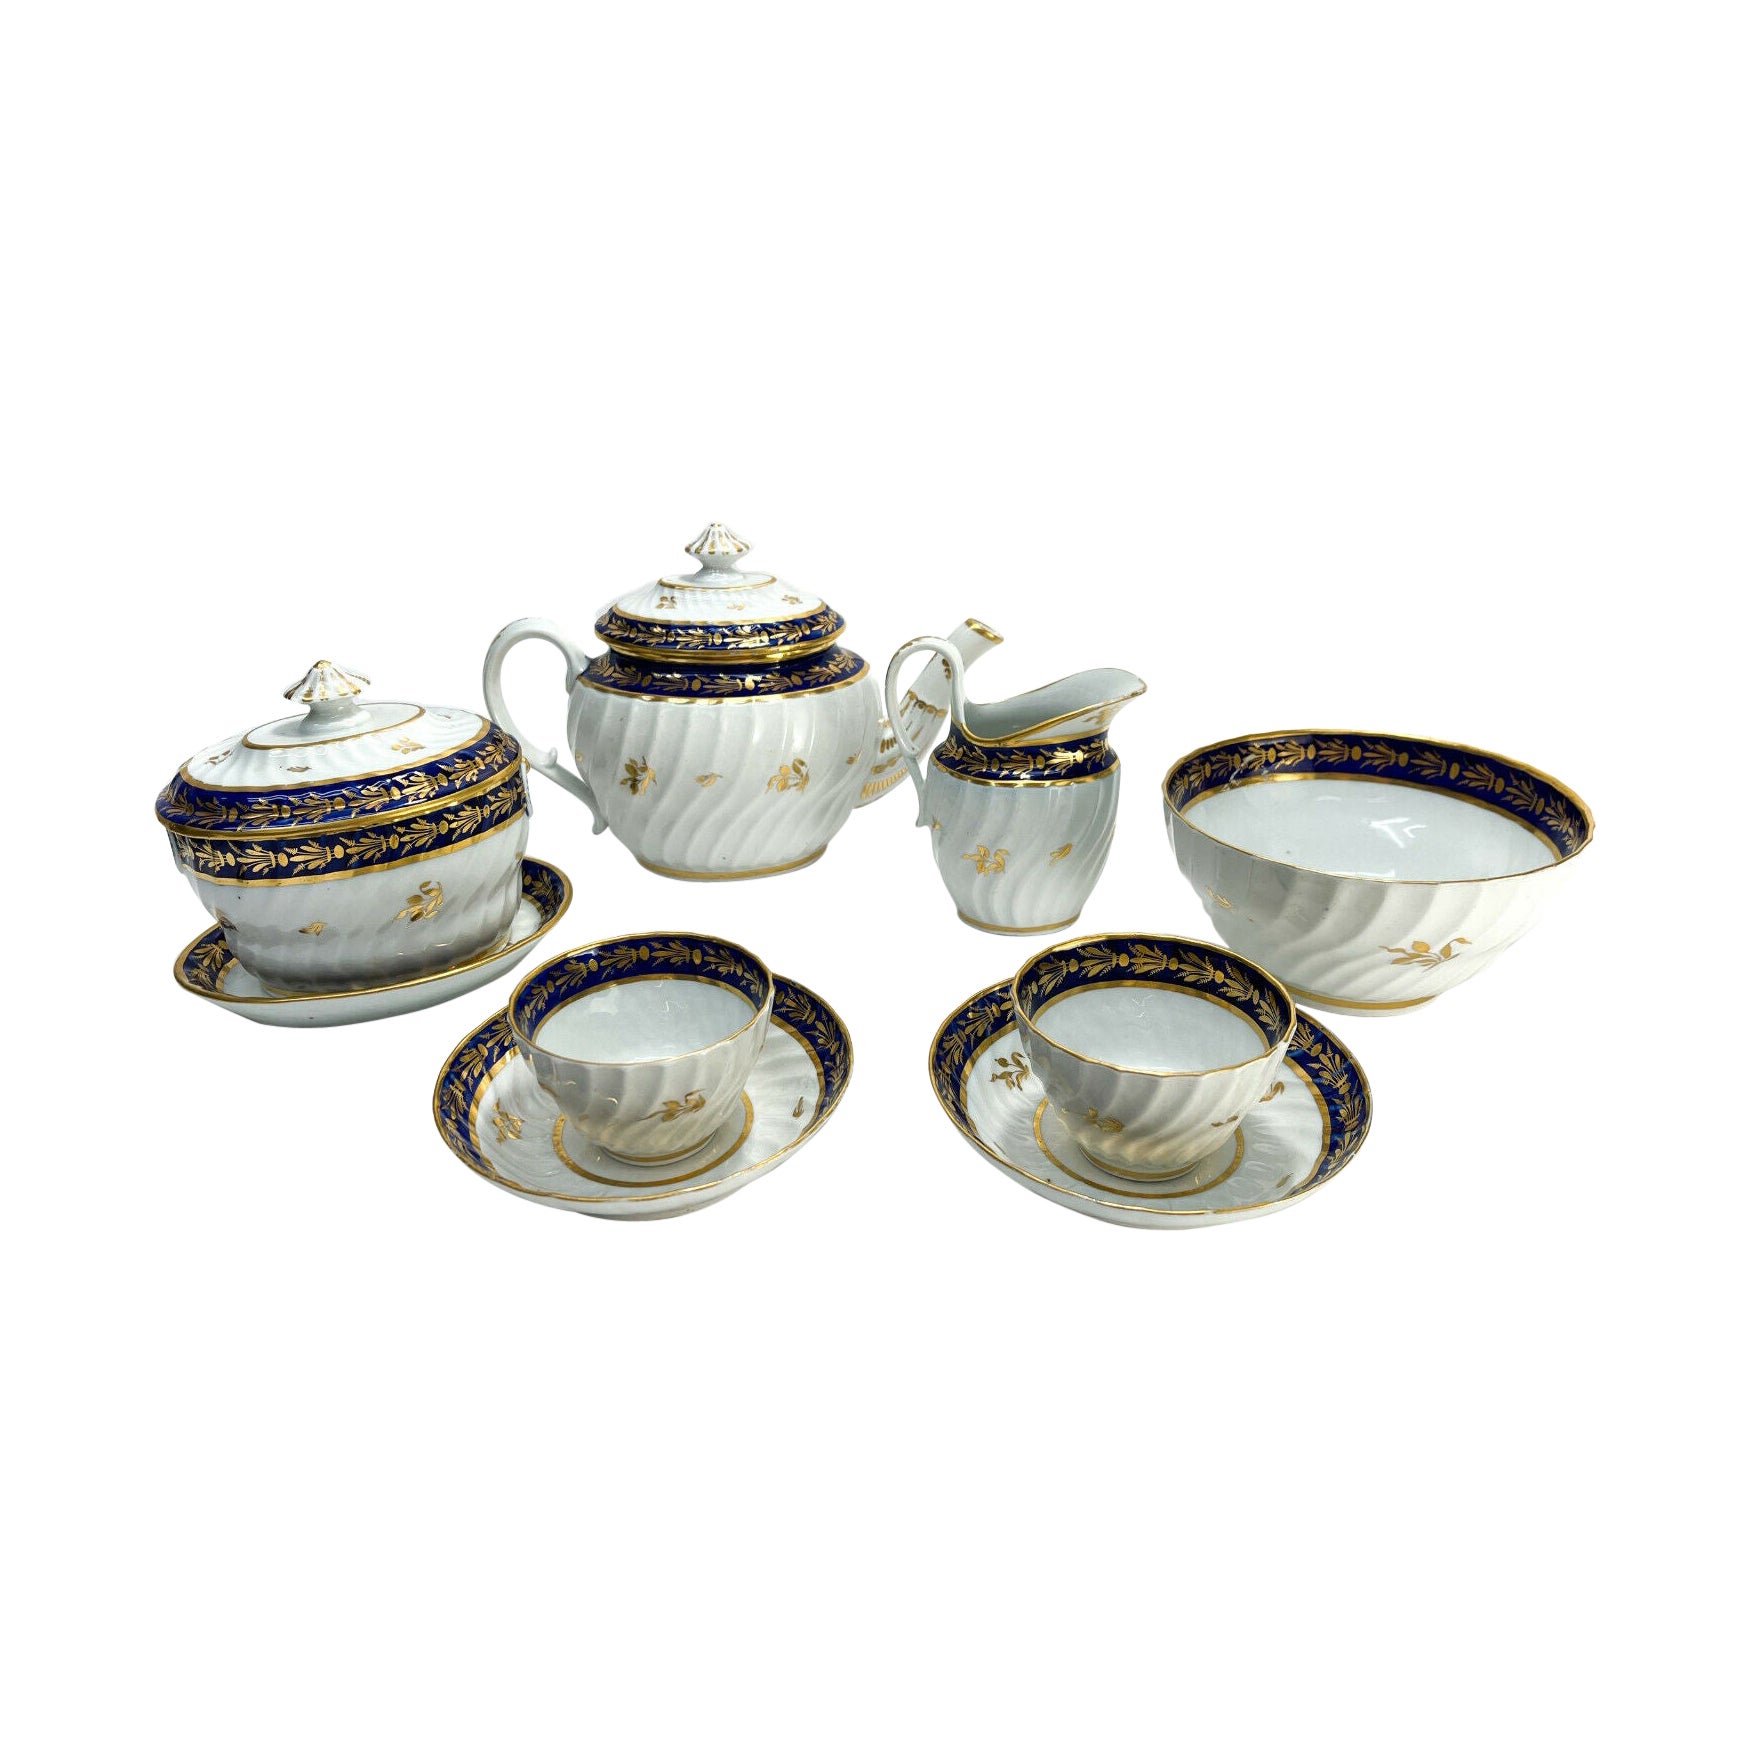 Englisches Tete-a-Tete-Tete-Tee-Teeservice aus Porzellan, kobaltblau und vergoldet, frühes 19. Jahrhundert